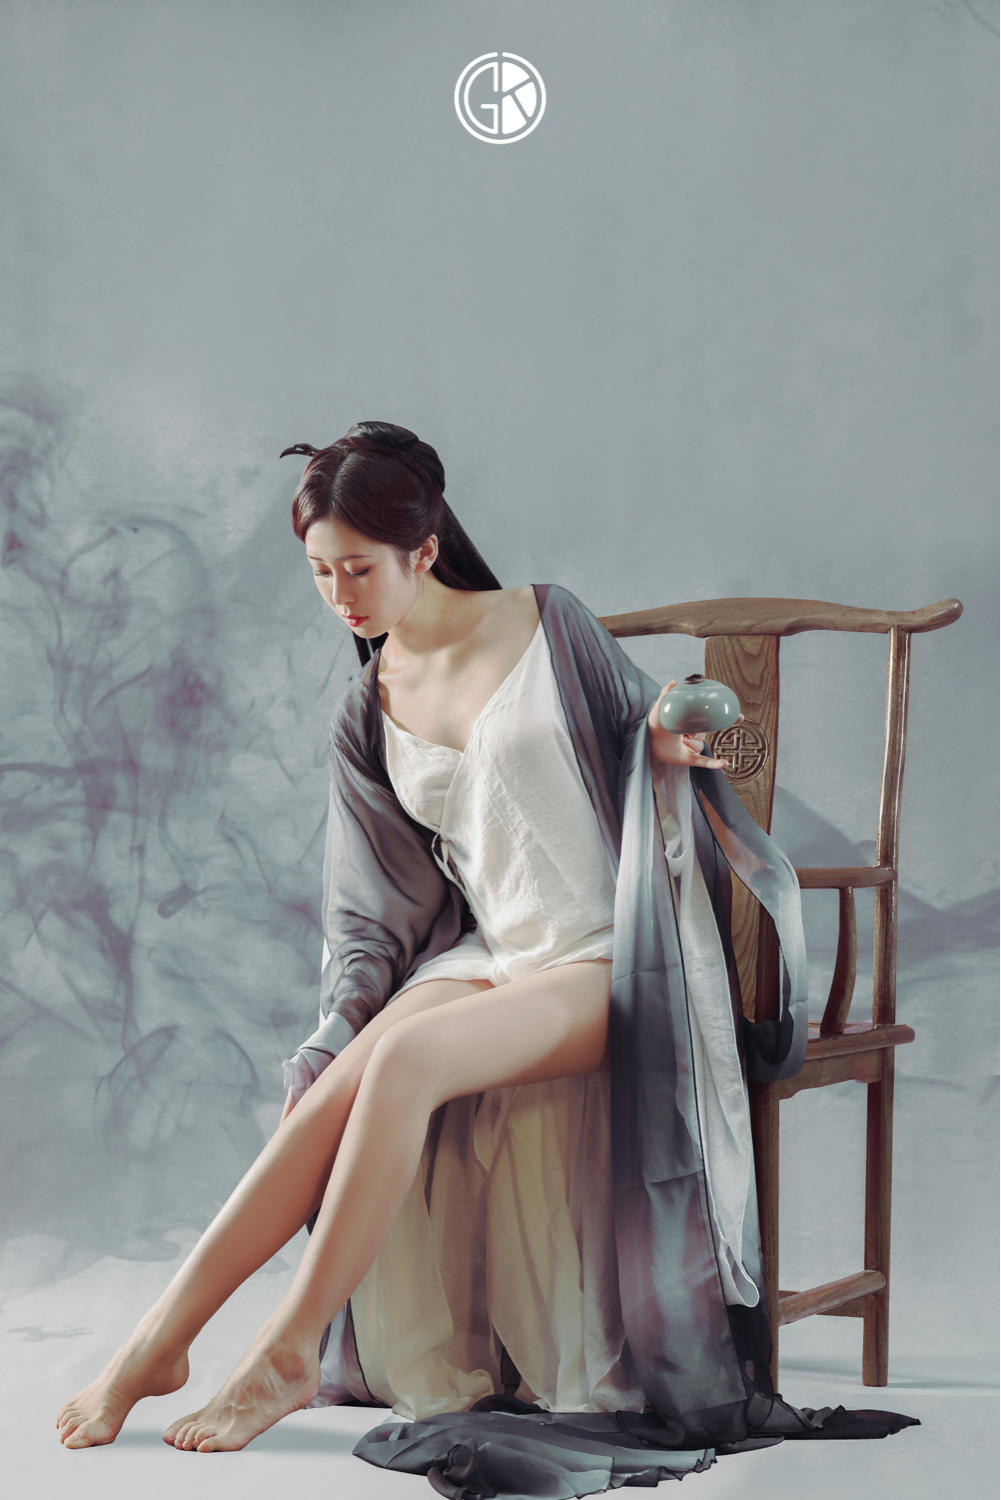 长发及腰古典美人美腿666顶级亚洲大胆裸体艺术图片